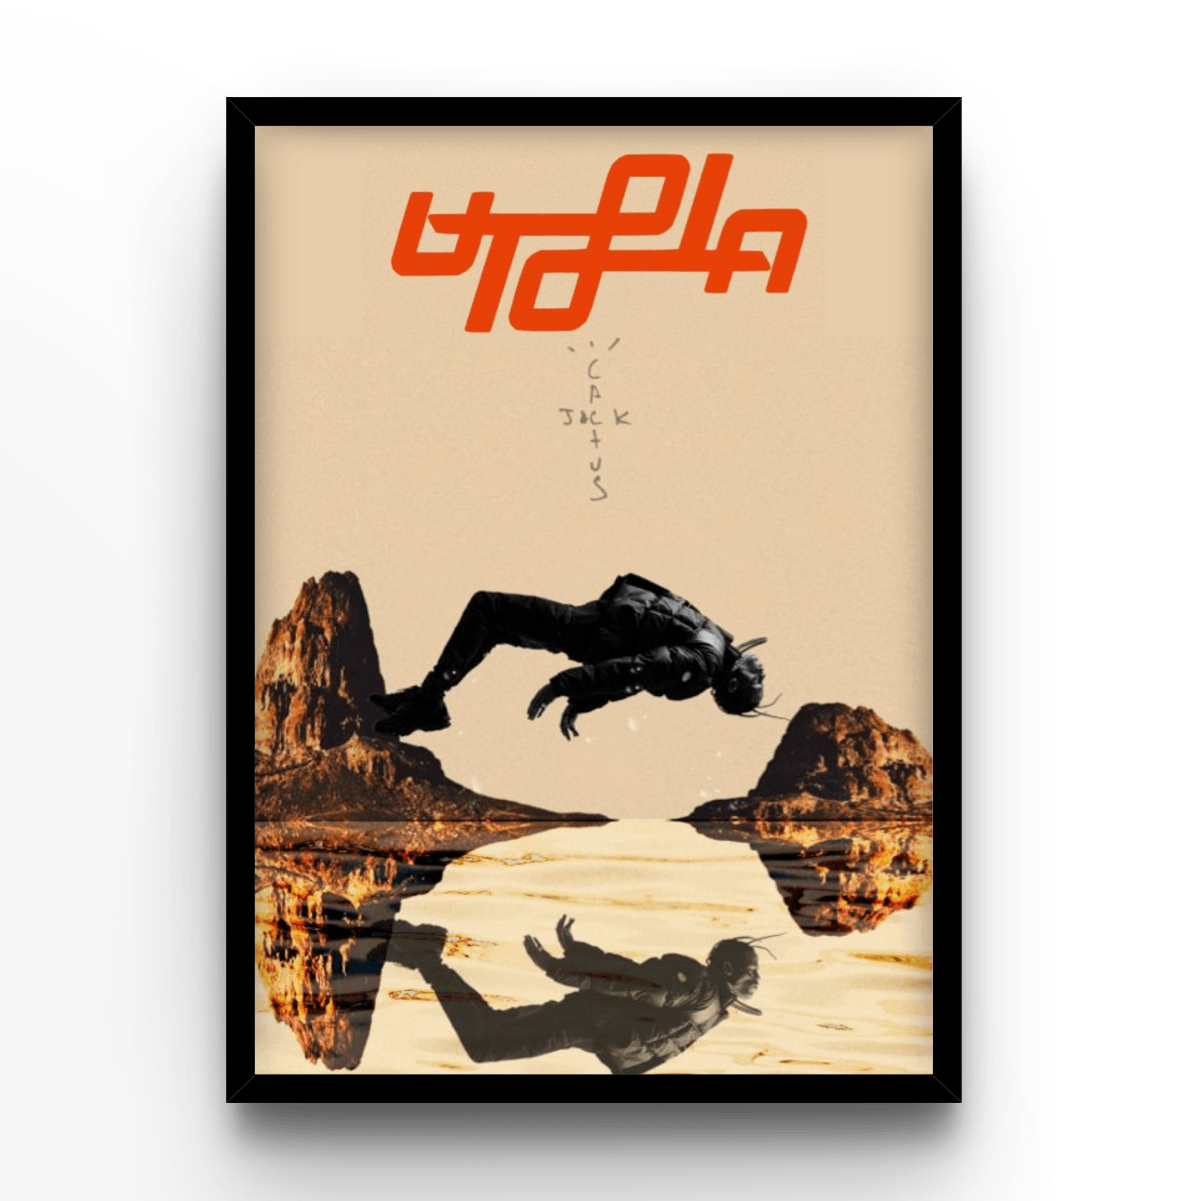 Travis Scott Utopia Cover - A4, A3, A2 Posters Base - Poster Print Shop / Art Prints / PostersBase